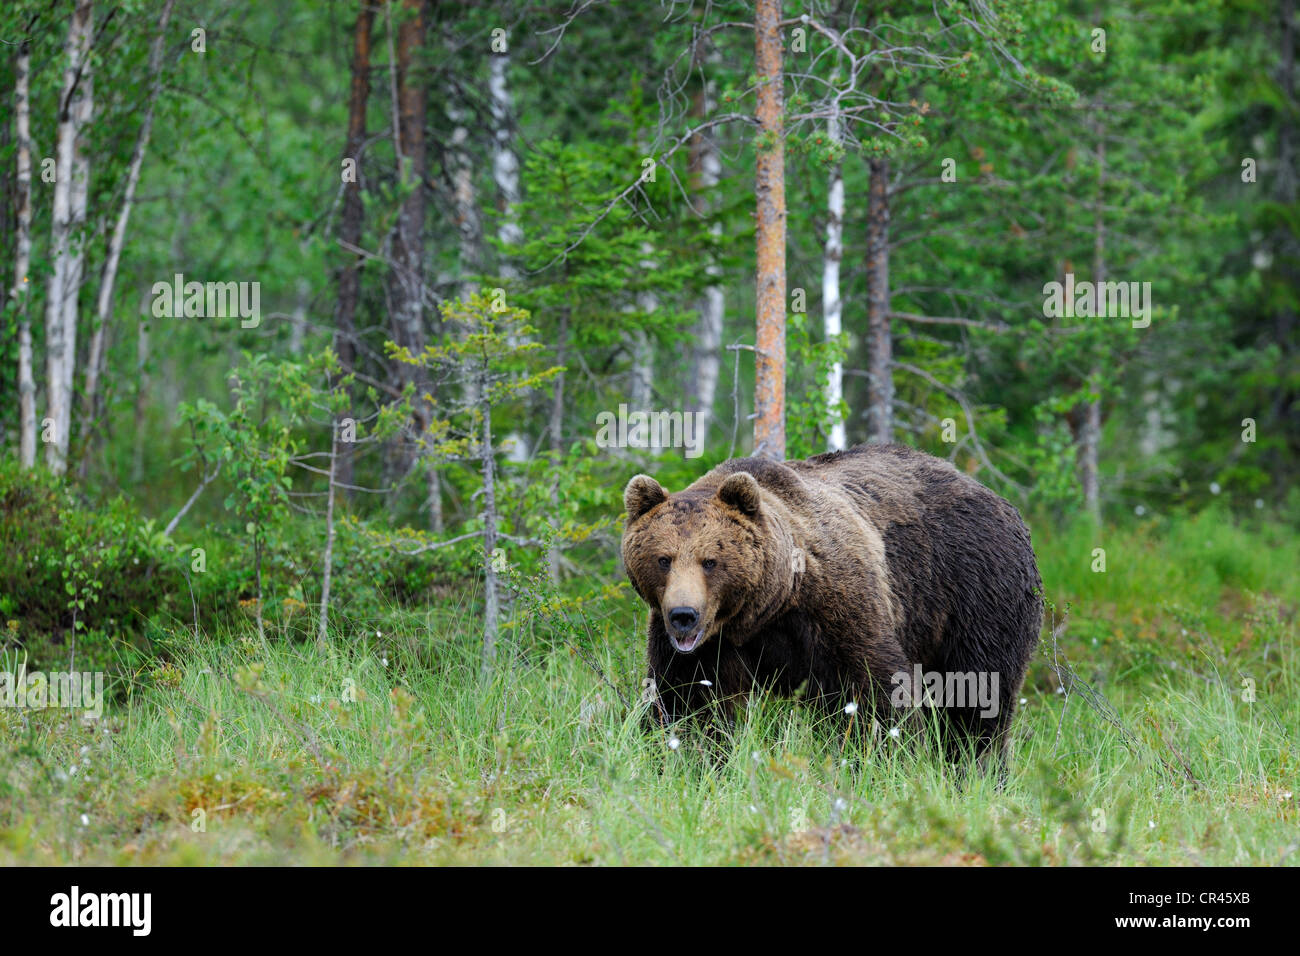 Ours brun (Ursus arctos), adulte mâle dans un marais, Martinselkonen, Carélie, dans l'est de la Finlande, Finlande, Europe Banque D'Images